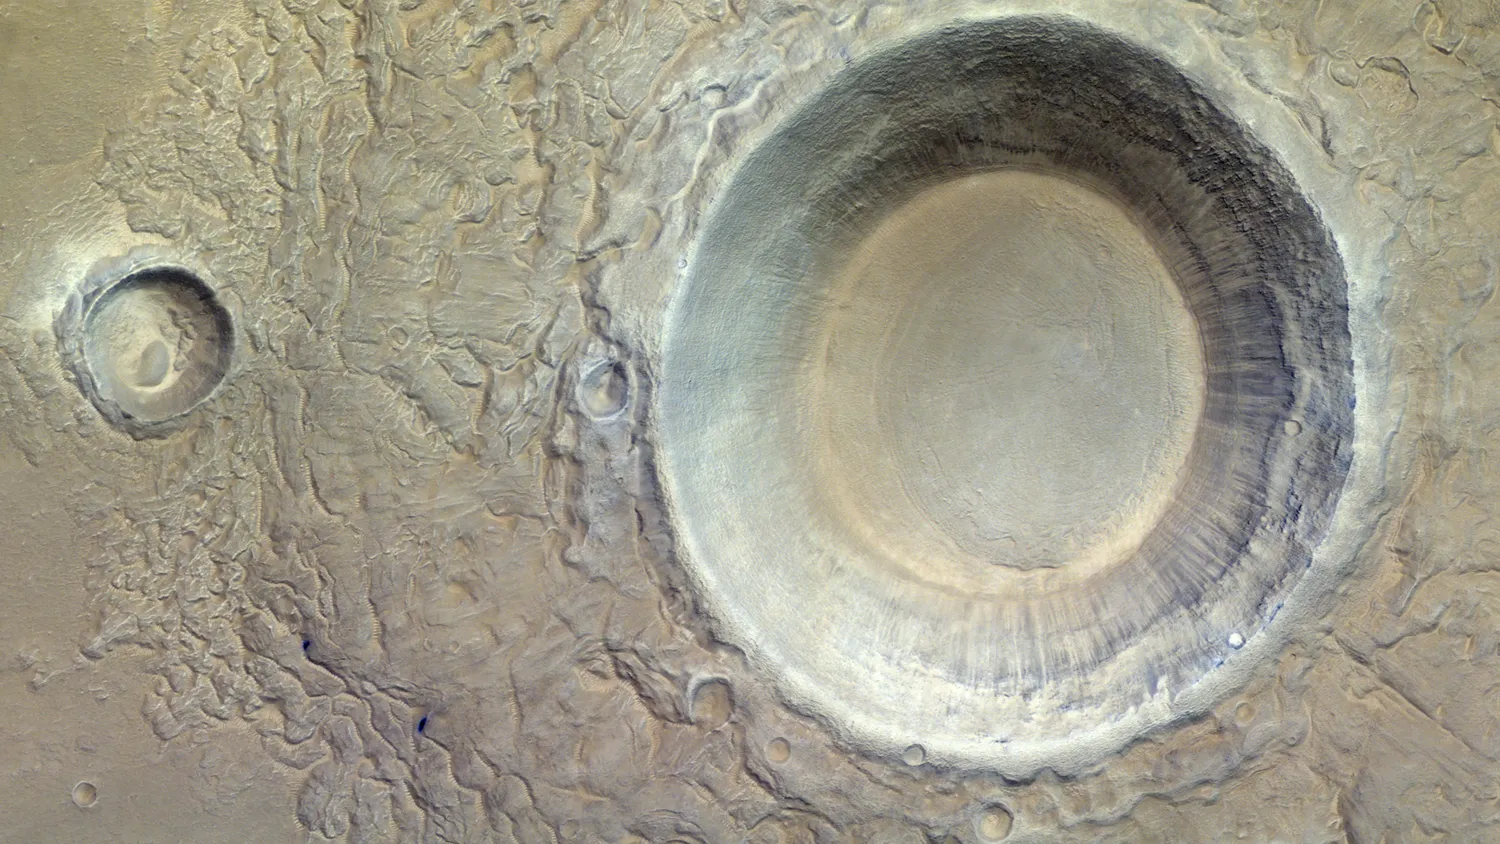 Mehr über den Artikel erfahren Ein massiver, eisiger Marskrater starrt auf einen Orbiter des Roten Planeten (Bild)